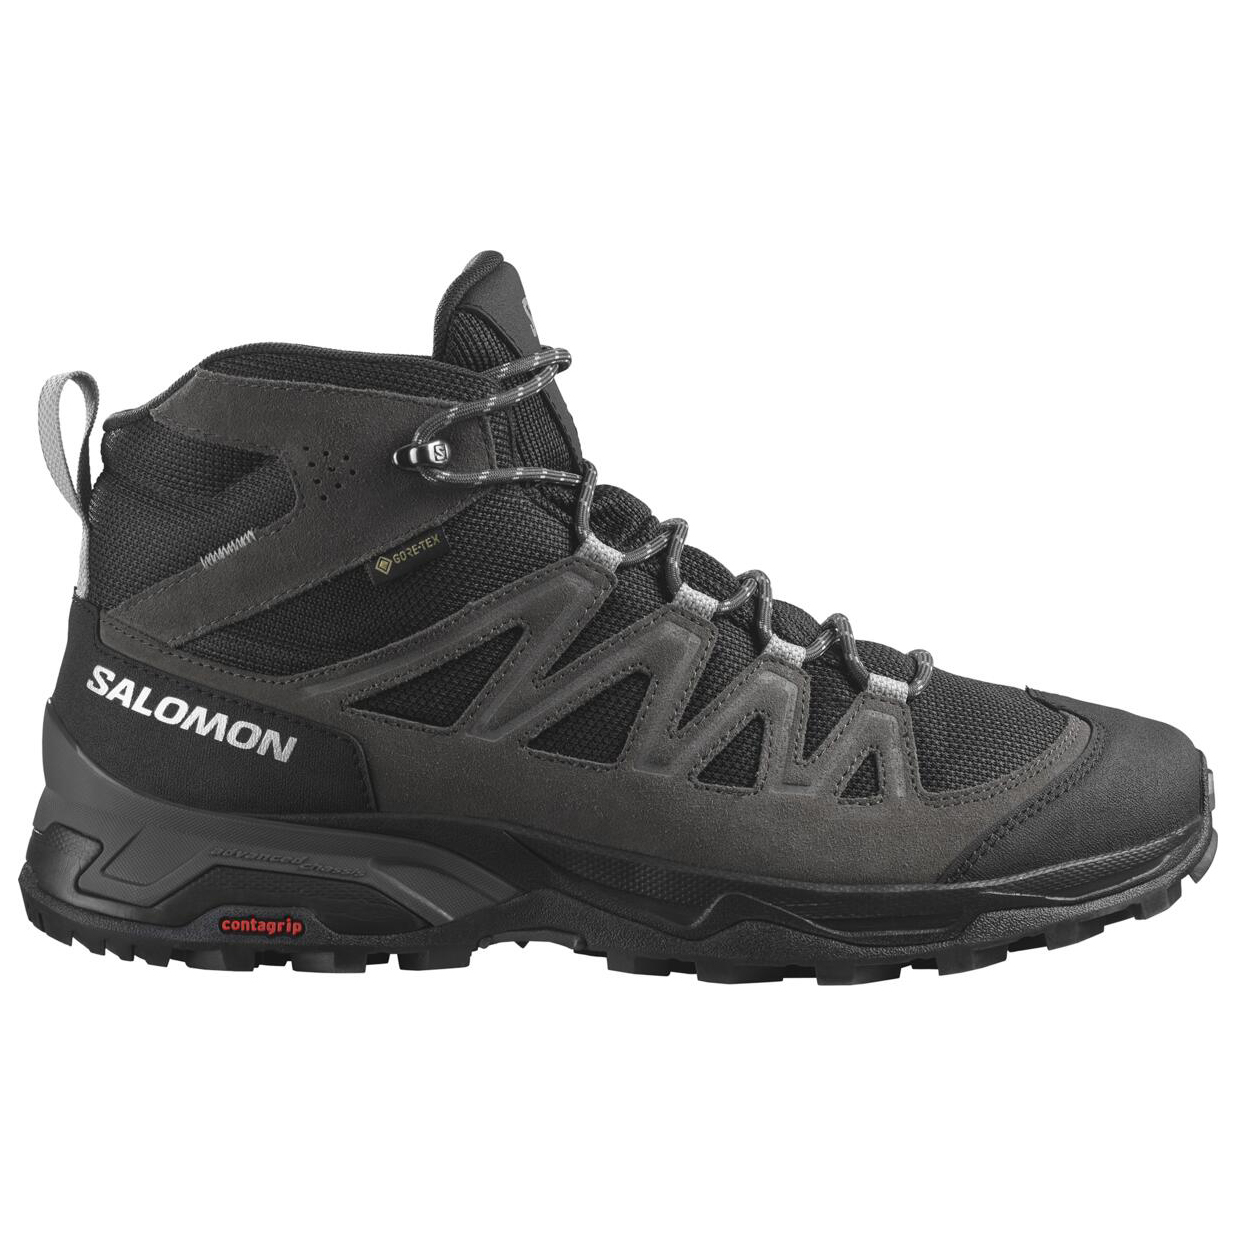 Ботинки для прогулки Salomon X Ward Leather Mid GTX, цвет Phantom/Black/Magnet